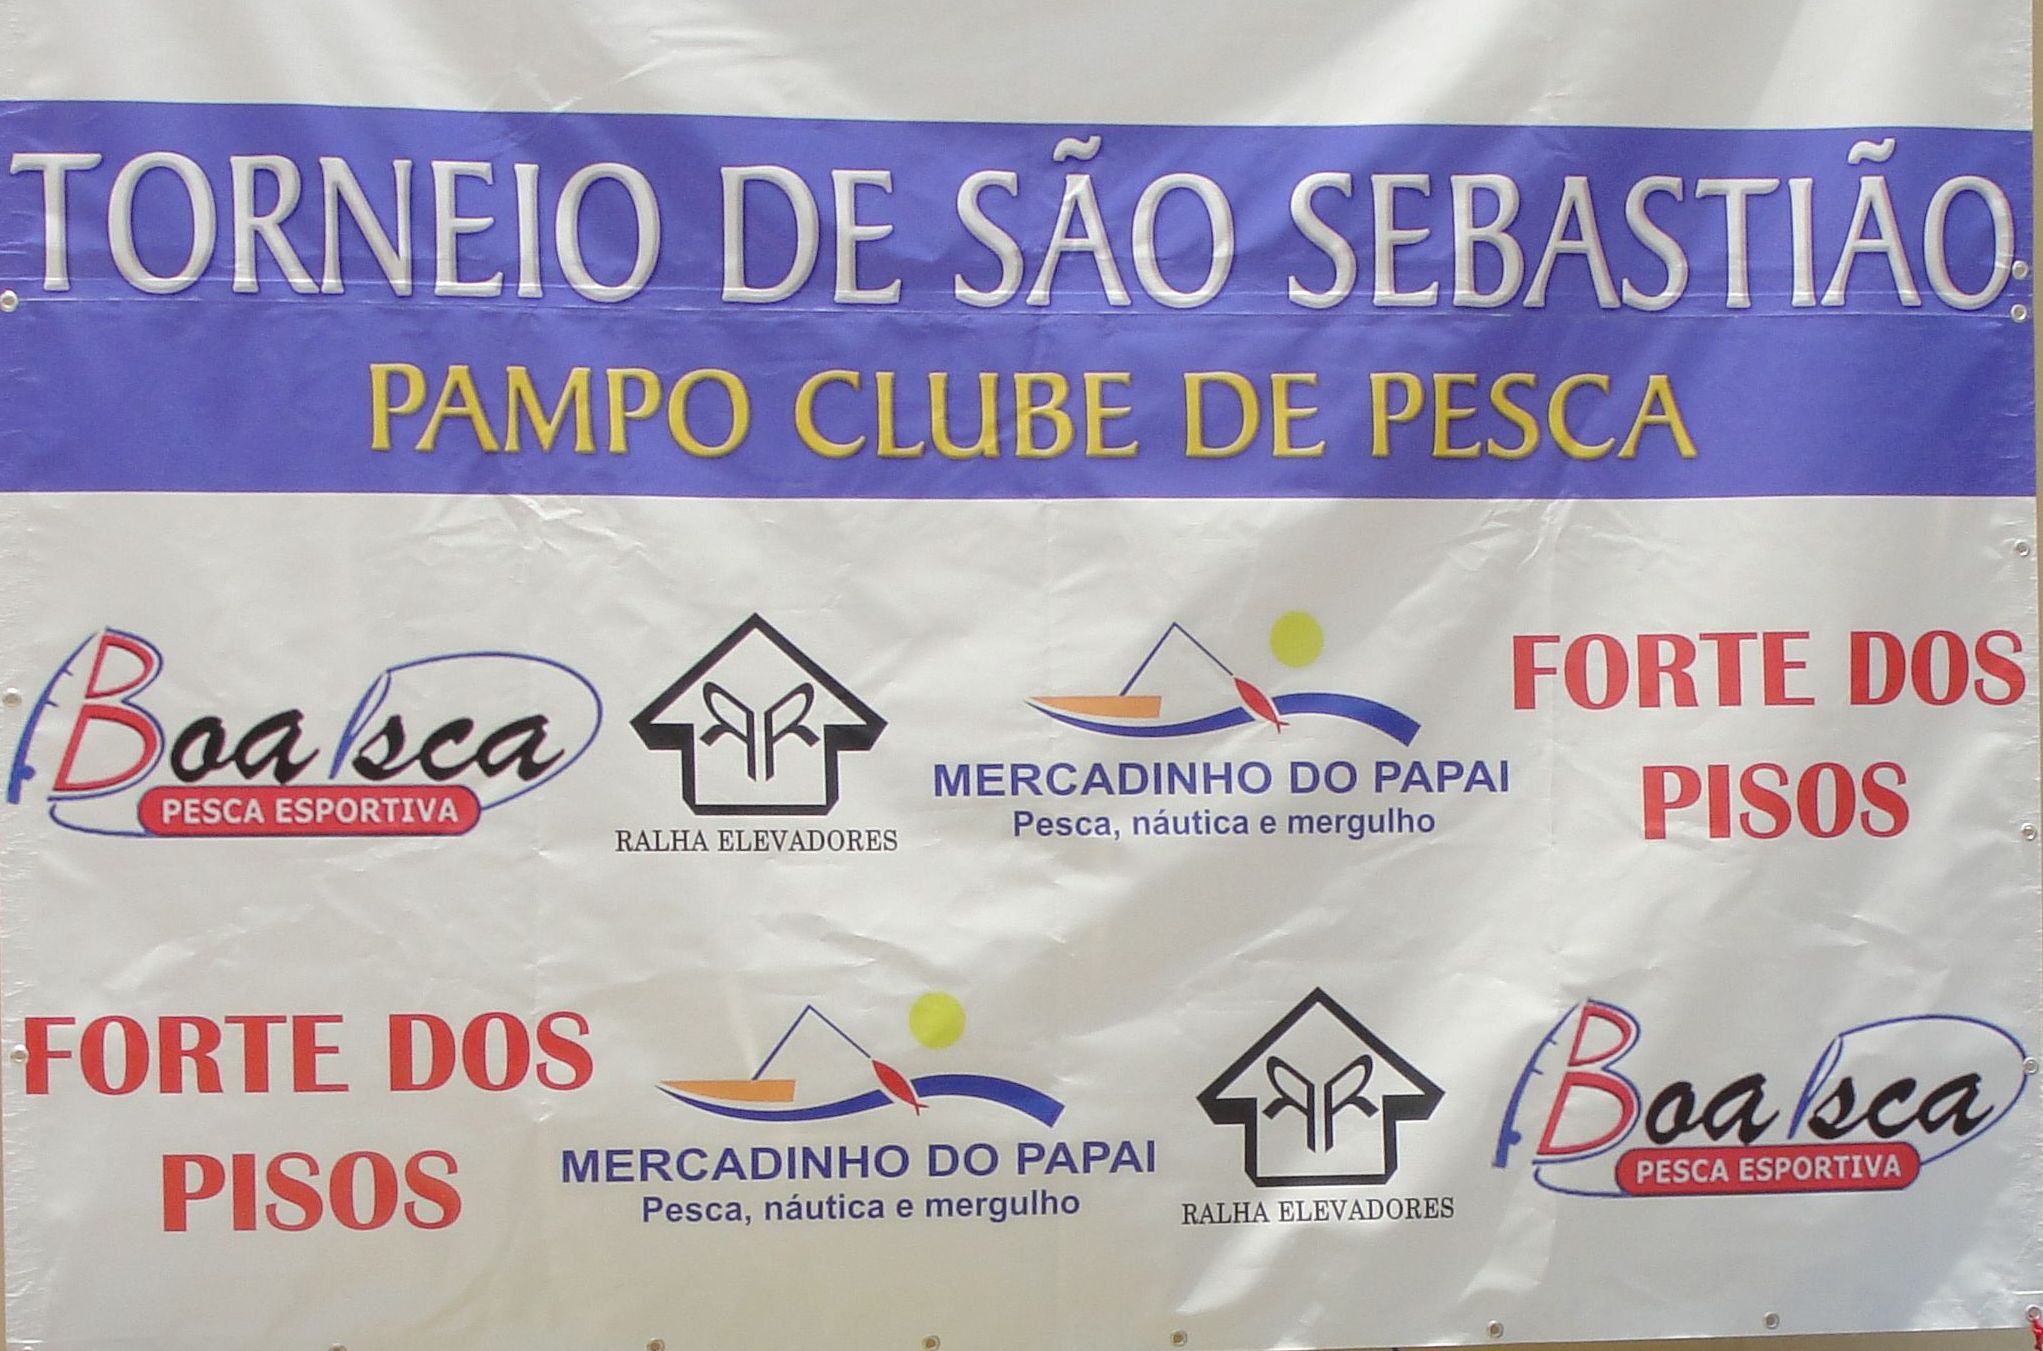 Torneio de São Sebastião 2010 – Passeio na Praia